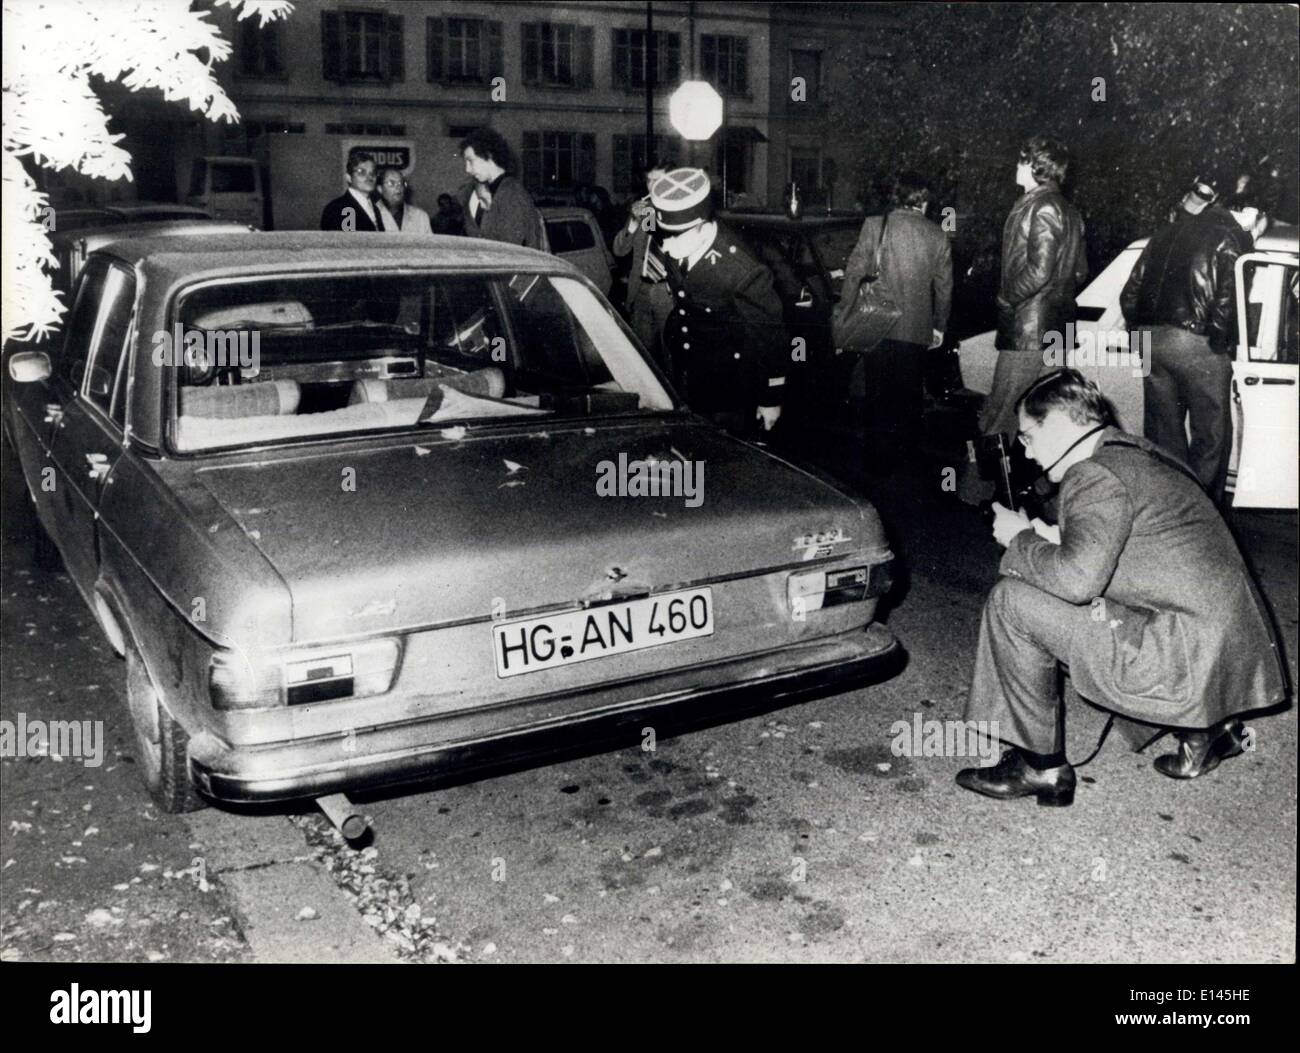 Avril 04, 2012 - octobre 1977 corps de M. Schleyer trouvés n coffre d'une voiture. Le corps d'Hanns-Martin Schleyer industriel kidnappé a été trouvé avec la gorge tranchée dans le coffre d'une voiture Audi immergées dans la ville française de Mulhouse, près de la frontière allemande. Photo montre : la police française et allemande d'examiner l'Audi voiture dans laquelle le corps de Schleyer a été trouvé. Banque D'Images